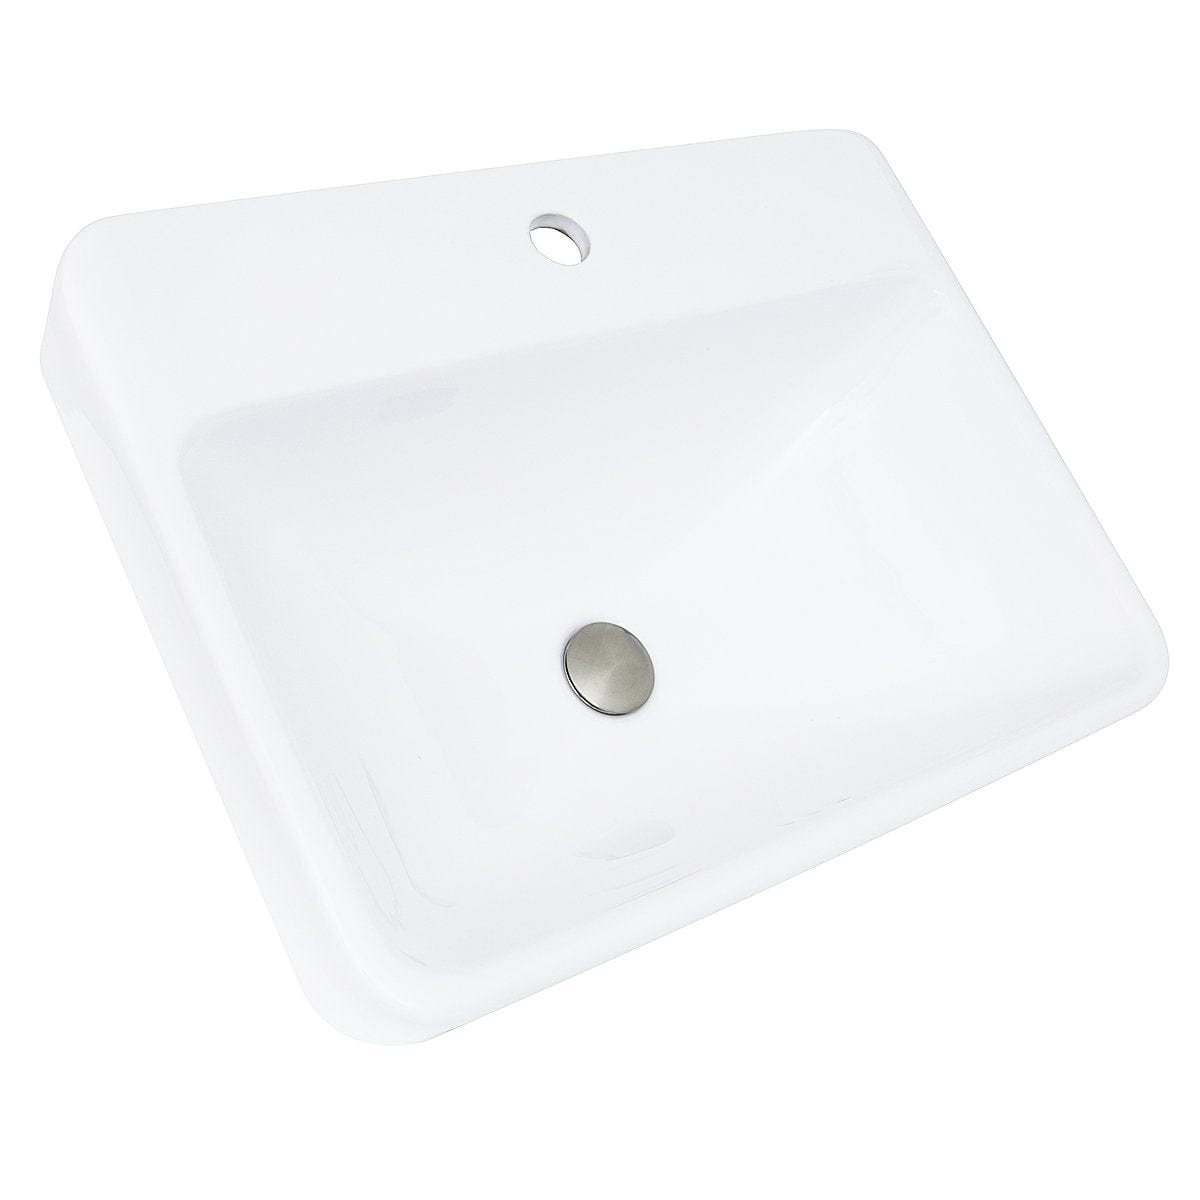 Nantucket 23" 1-hole Rectangular Drop-In Ceramic Vanity Sink - DI-2317-R1